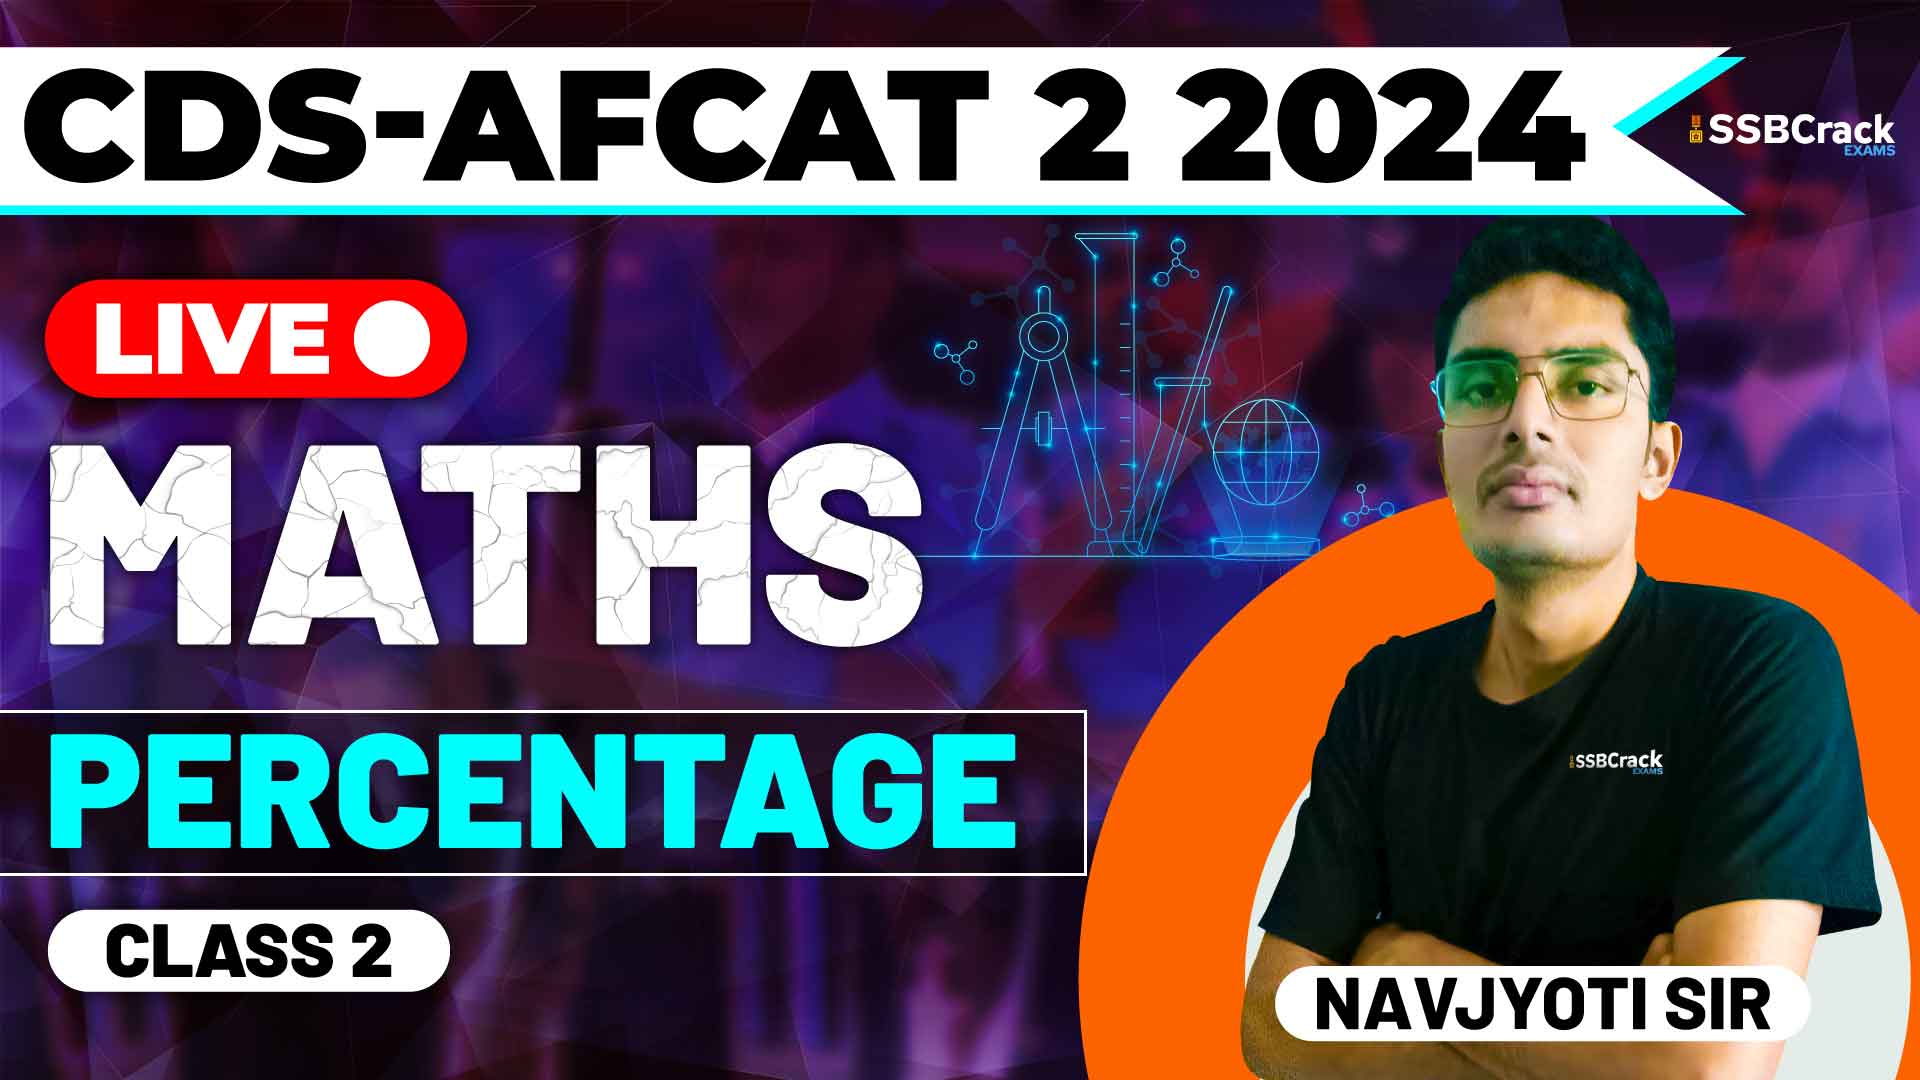 CDS AFCAT 2 2024 MATHS Percentage Class 2